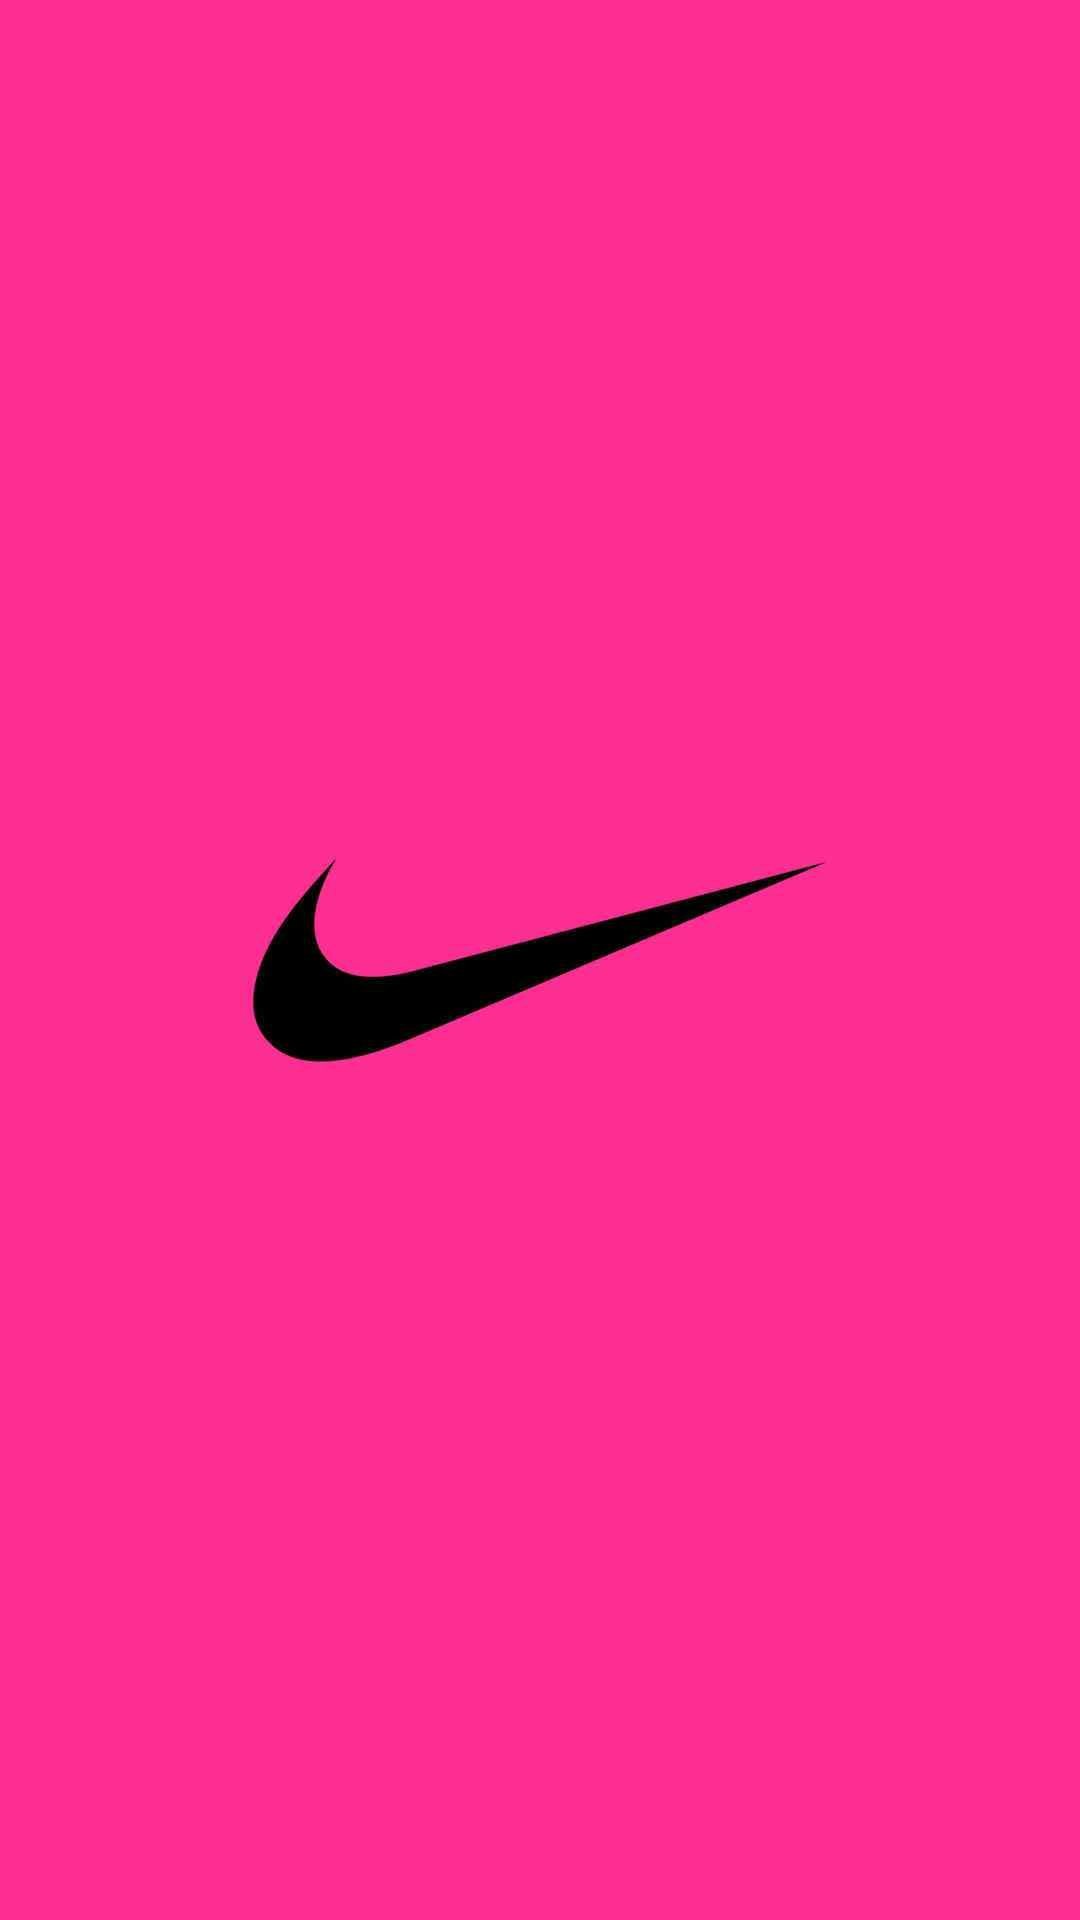 Tổng hợp 9999 Nike background pink Phù hợp với mọi thể loại quảng cáo